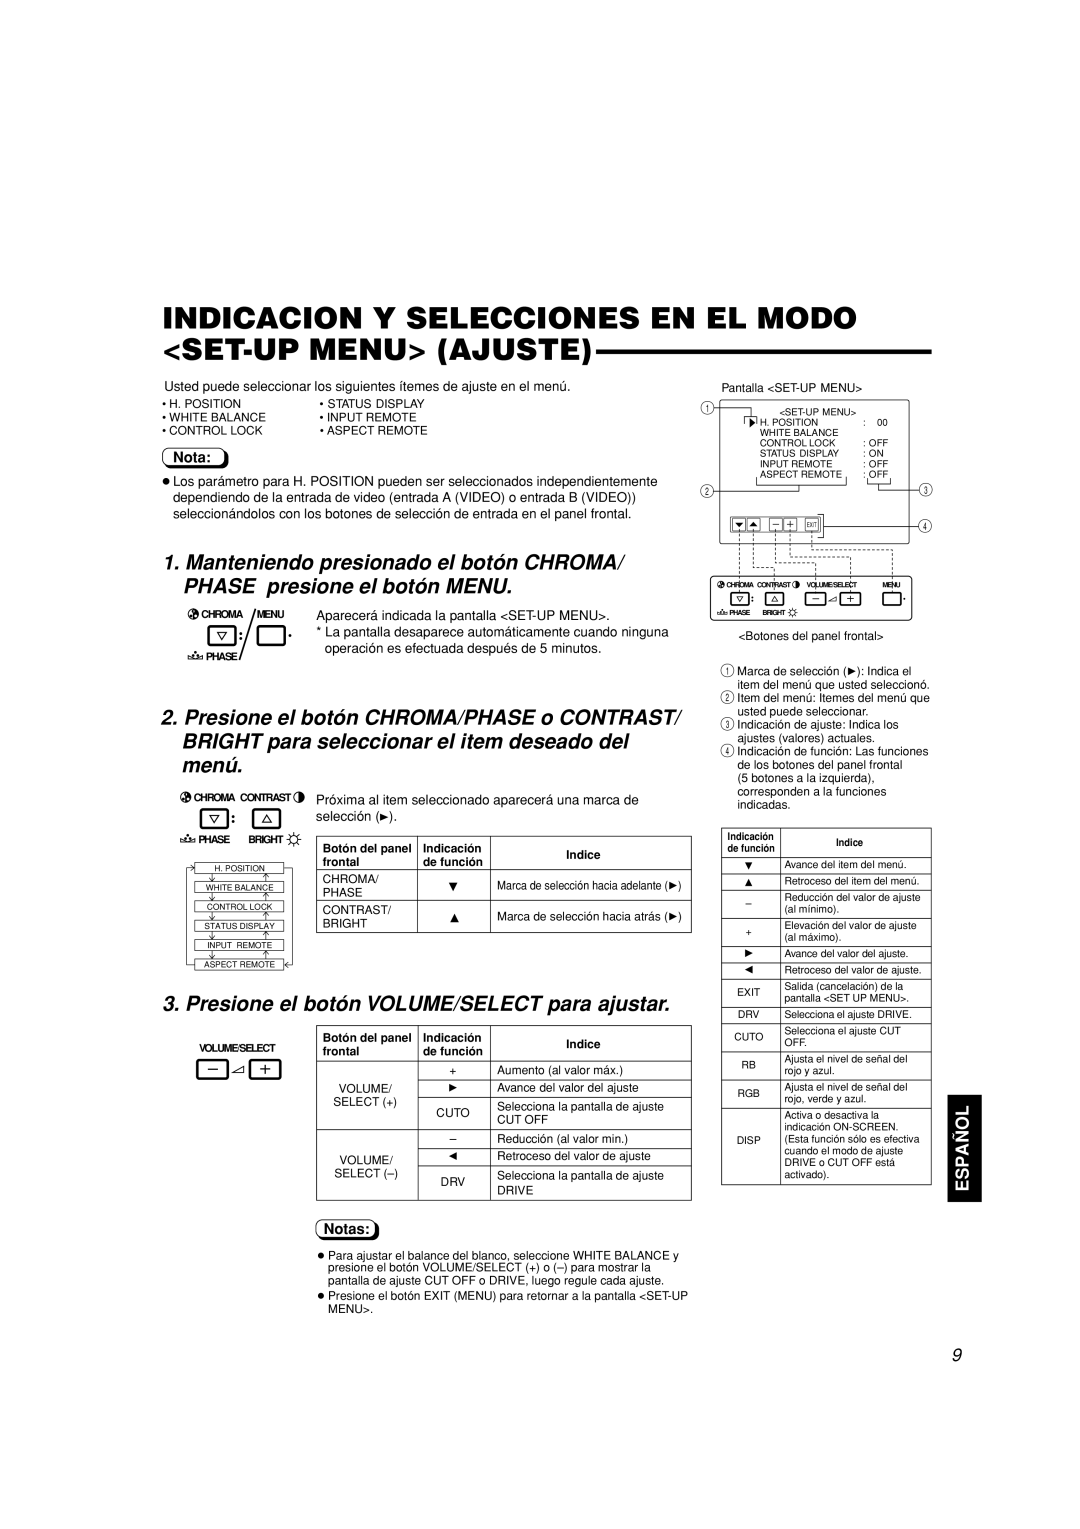 JVC TM-A101G Indicacion Y Selecciones En El Modo Set-Up Menu Ajuste, Presione el botón VOLUME/SELECT para ajustar, Español 